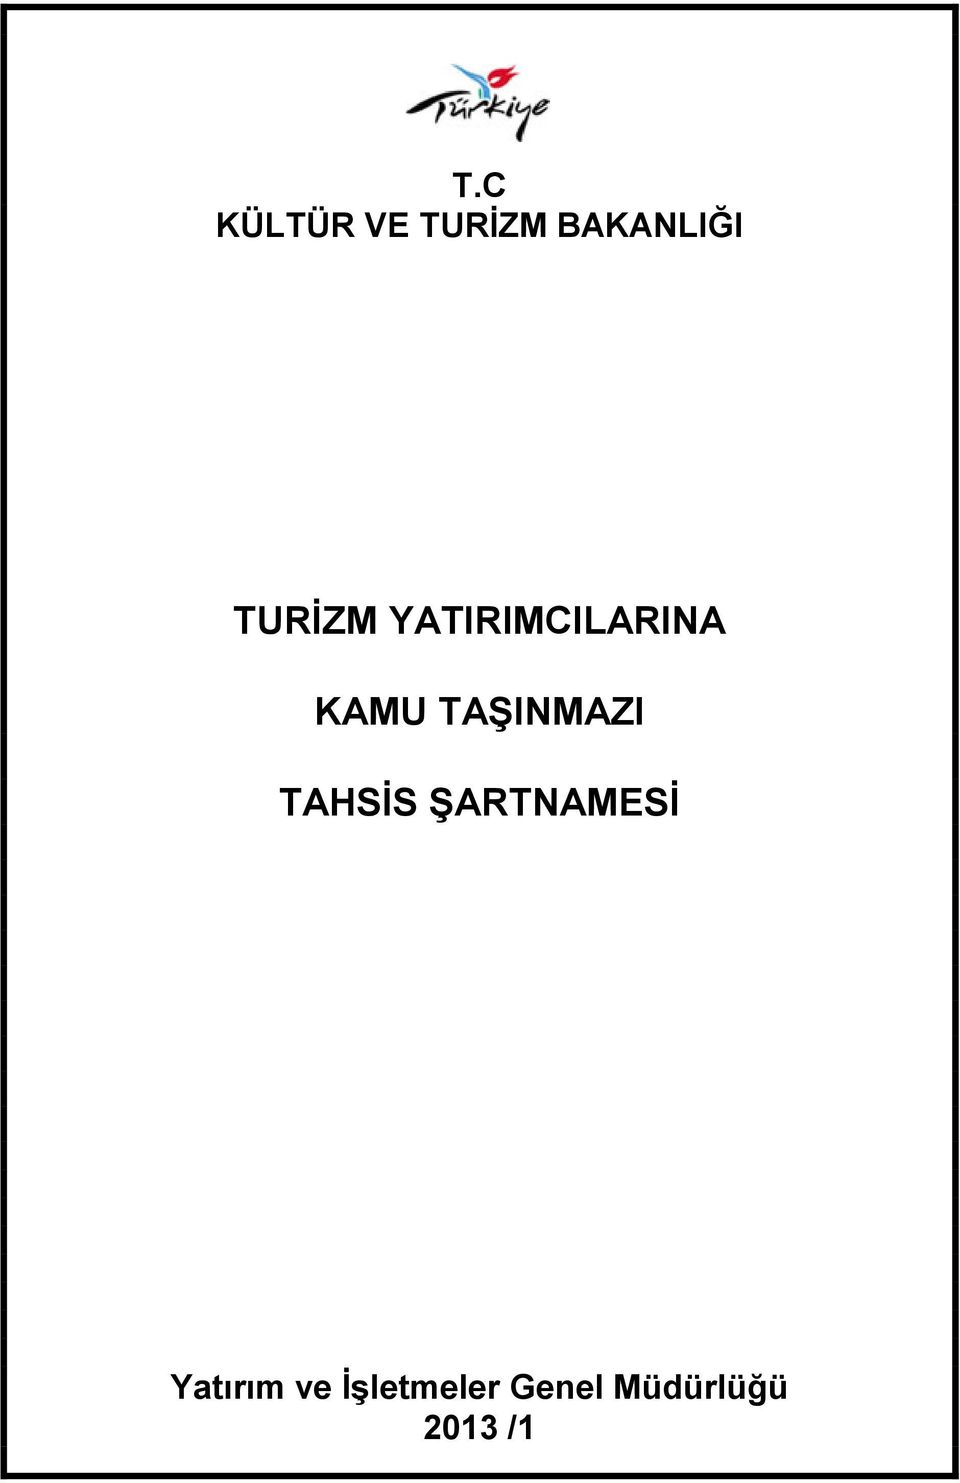 TAġINMAZI TAHSĠS ġartnamesġ